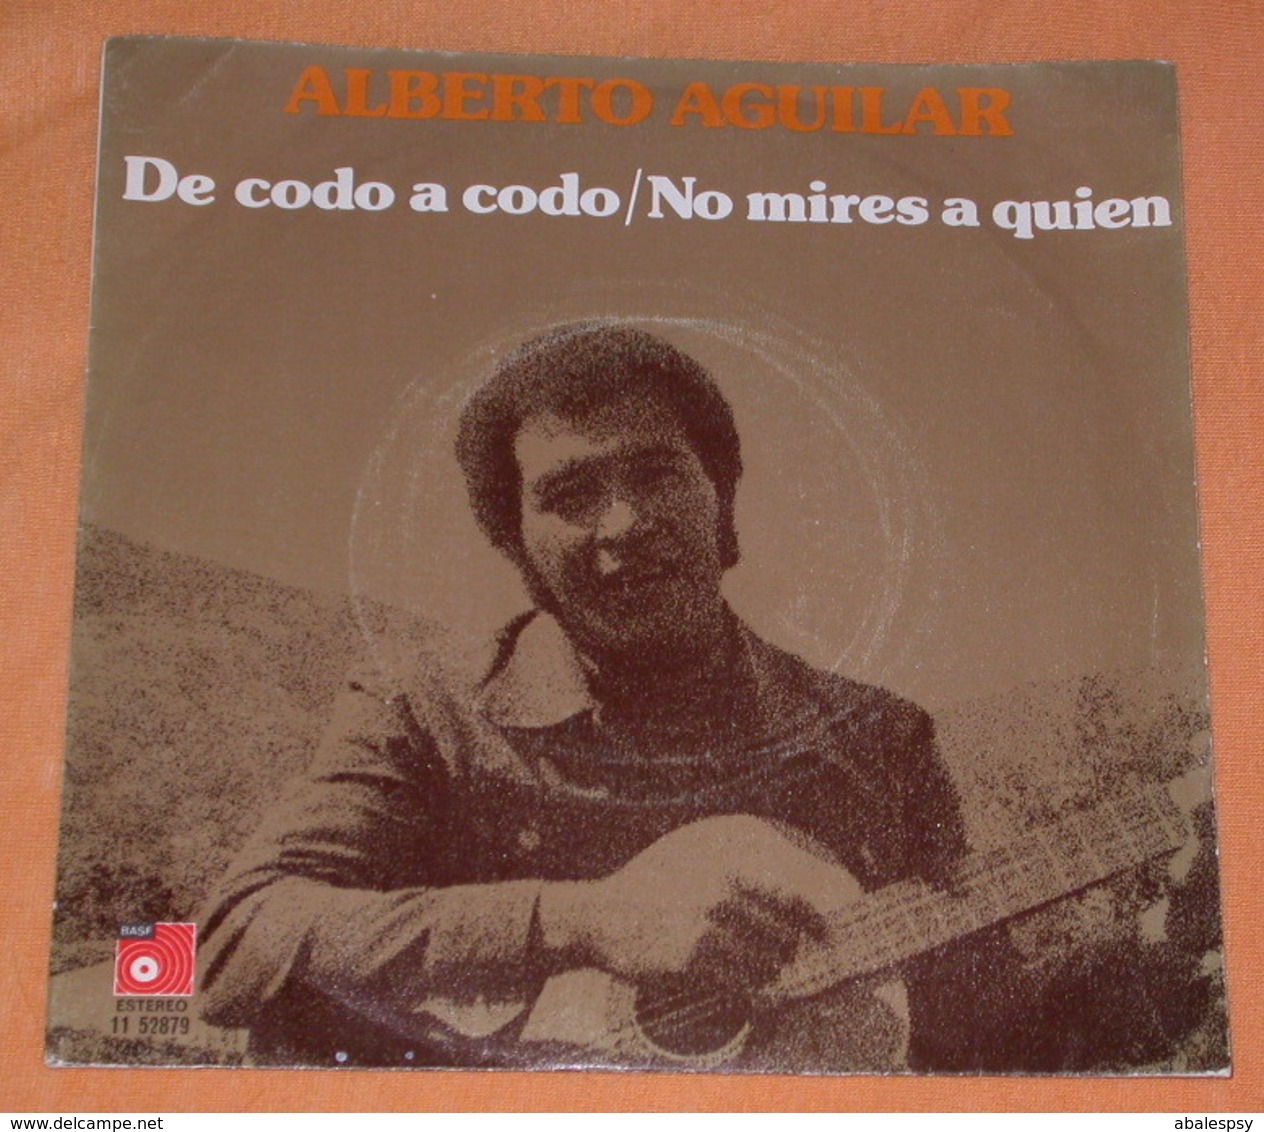 Alberto Aguilar 45t De Codo A Codo / No Mires A Quien (BAS 1975 Spain) Dedicace VG+ M - Autres - Musique Espagnole